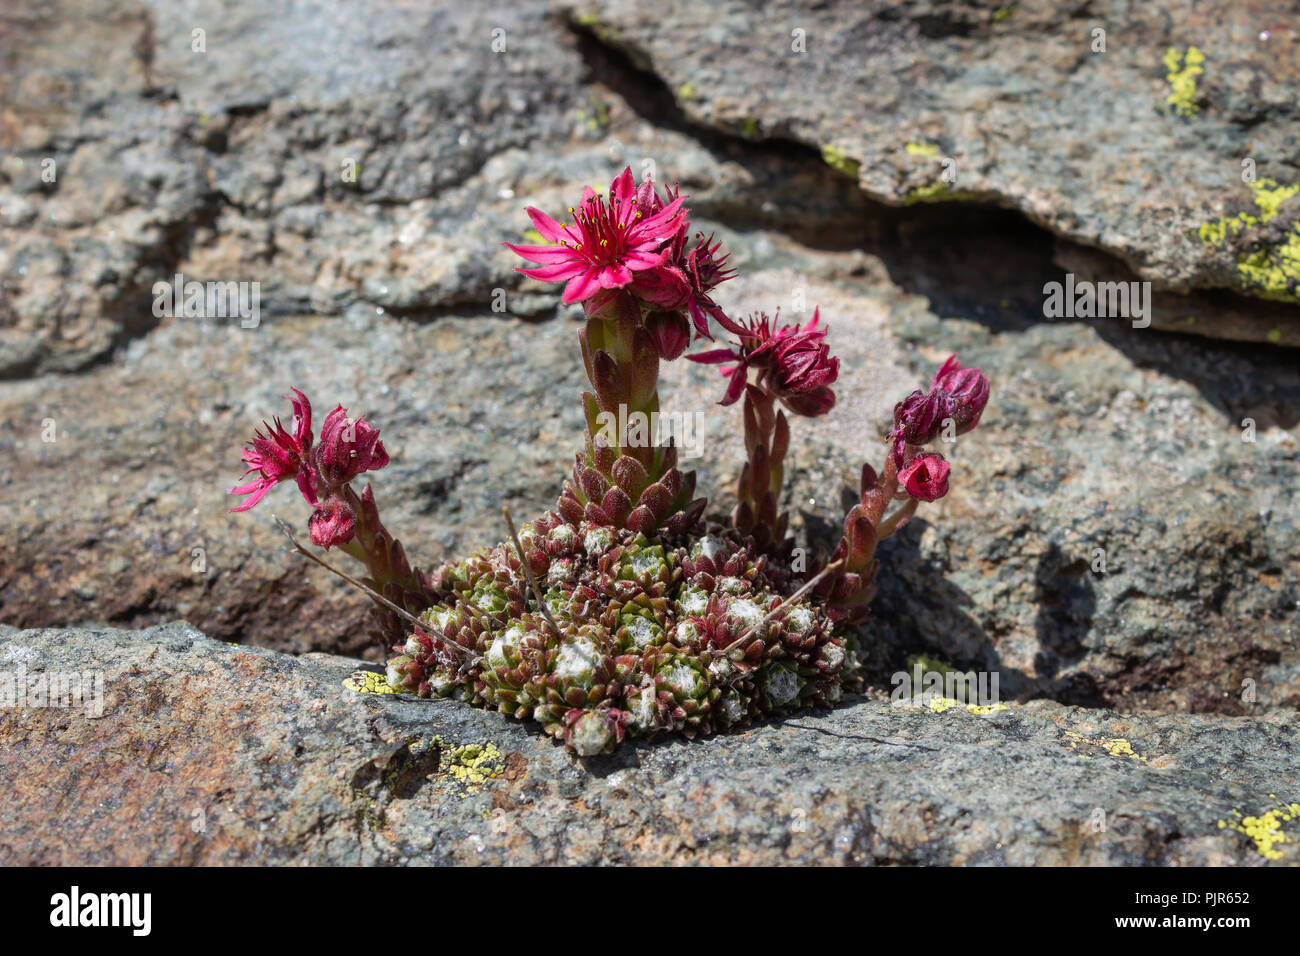 Sempervivum arachnoideum fleurs alpestres (cobweb houseleek) sur les roches. Plante succulente. Photo prise à une altitude de 2750 mètres. Banque D'Images